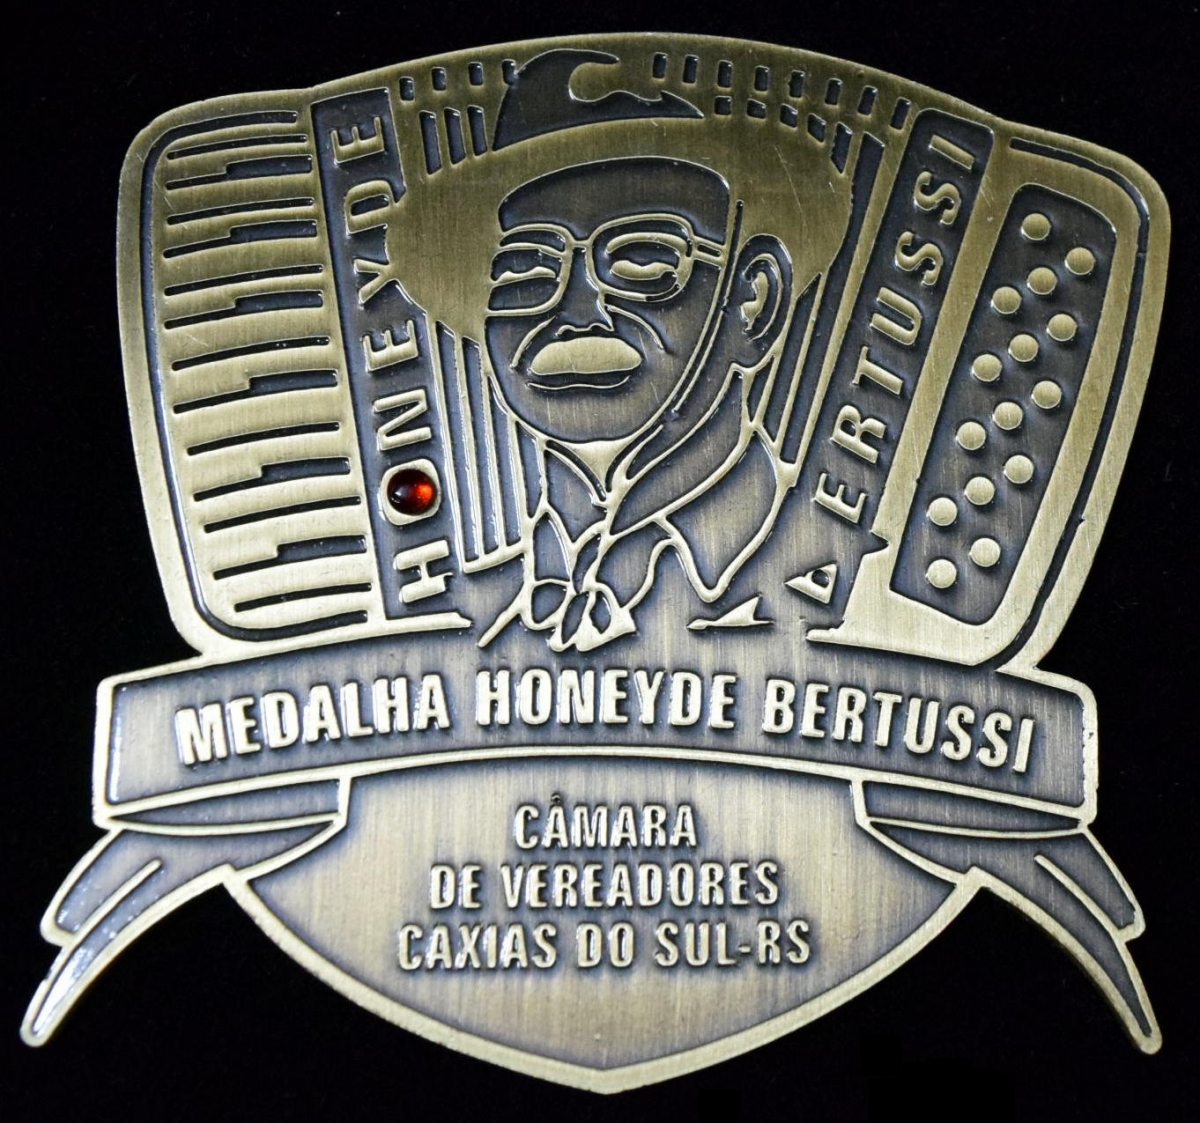 Leia mais sobre Comenda Medalha Honeyde Bertussi de 2015 será entregue em sessão solene desta quinta-feira